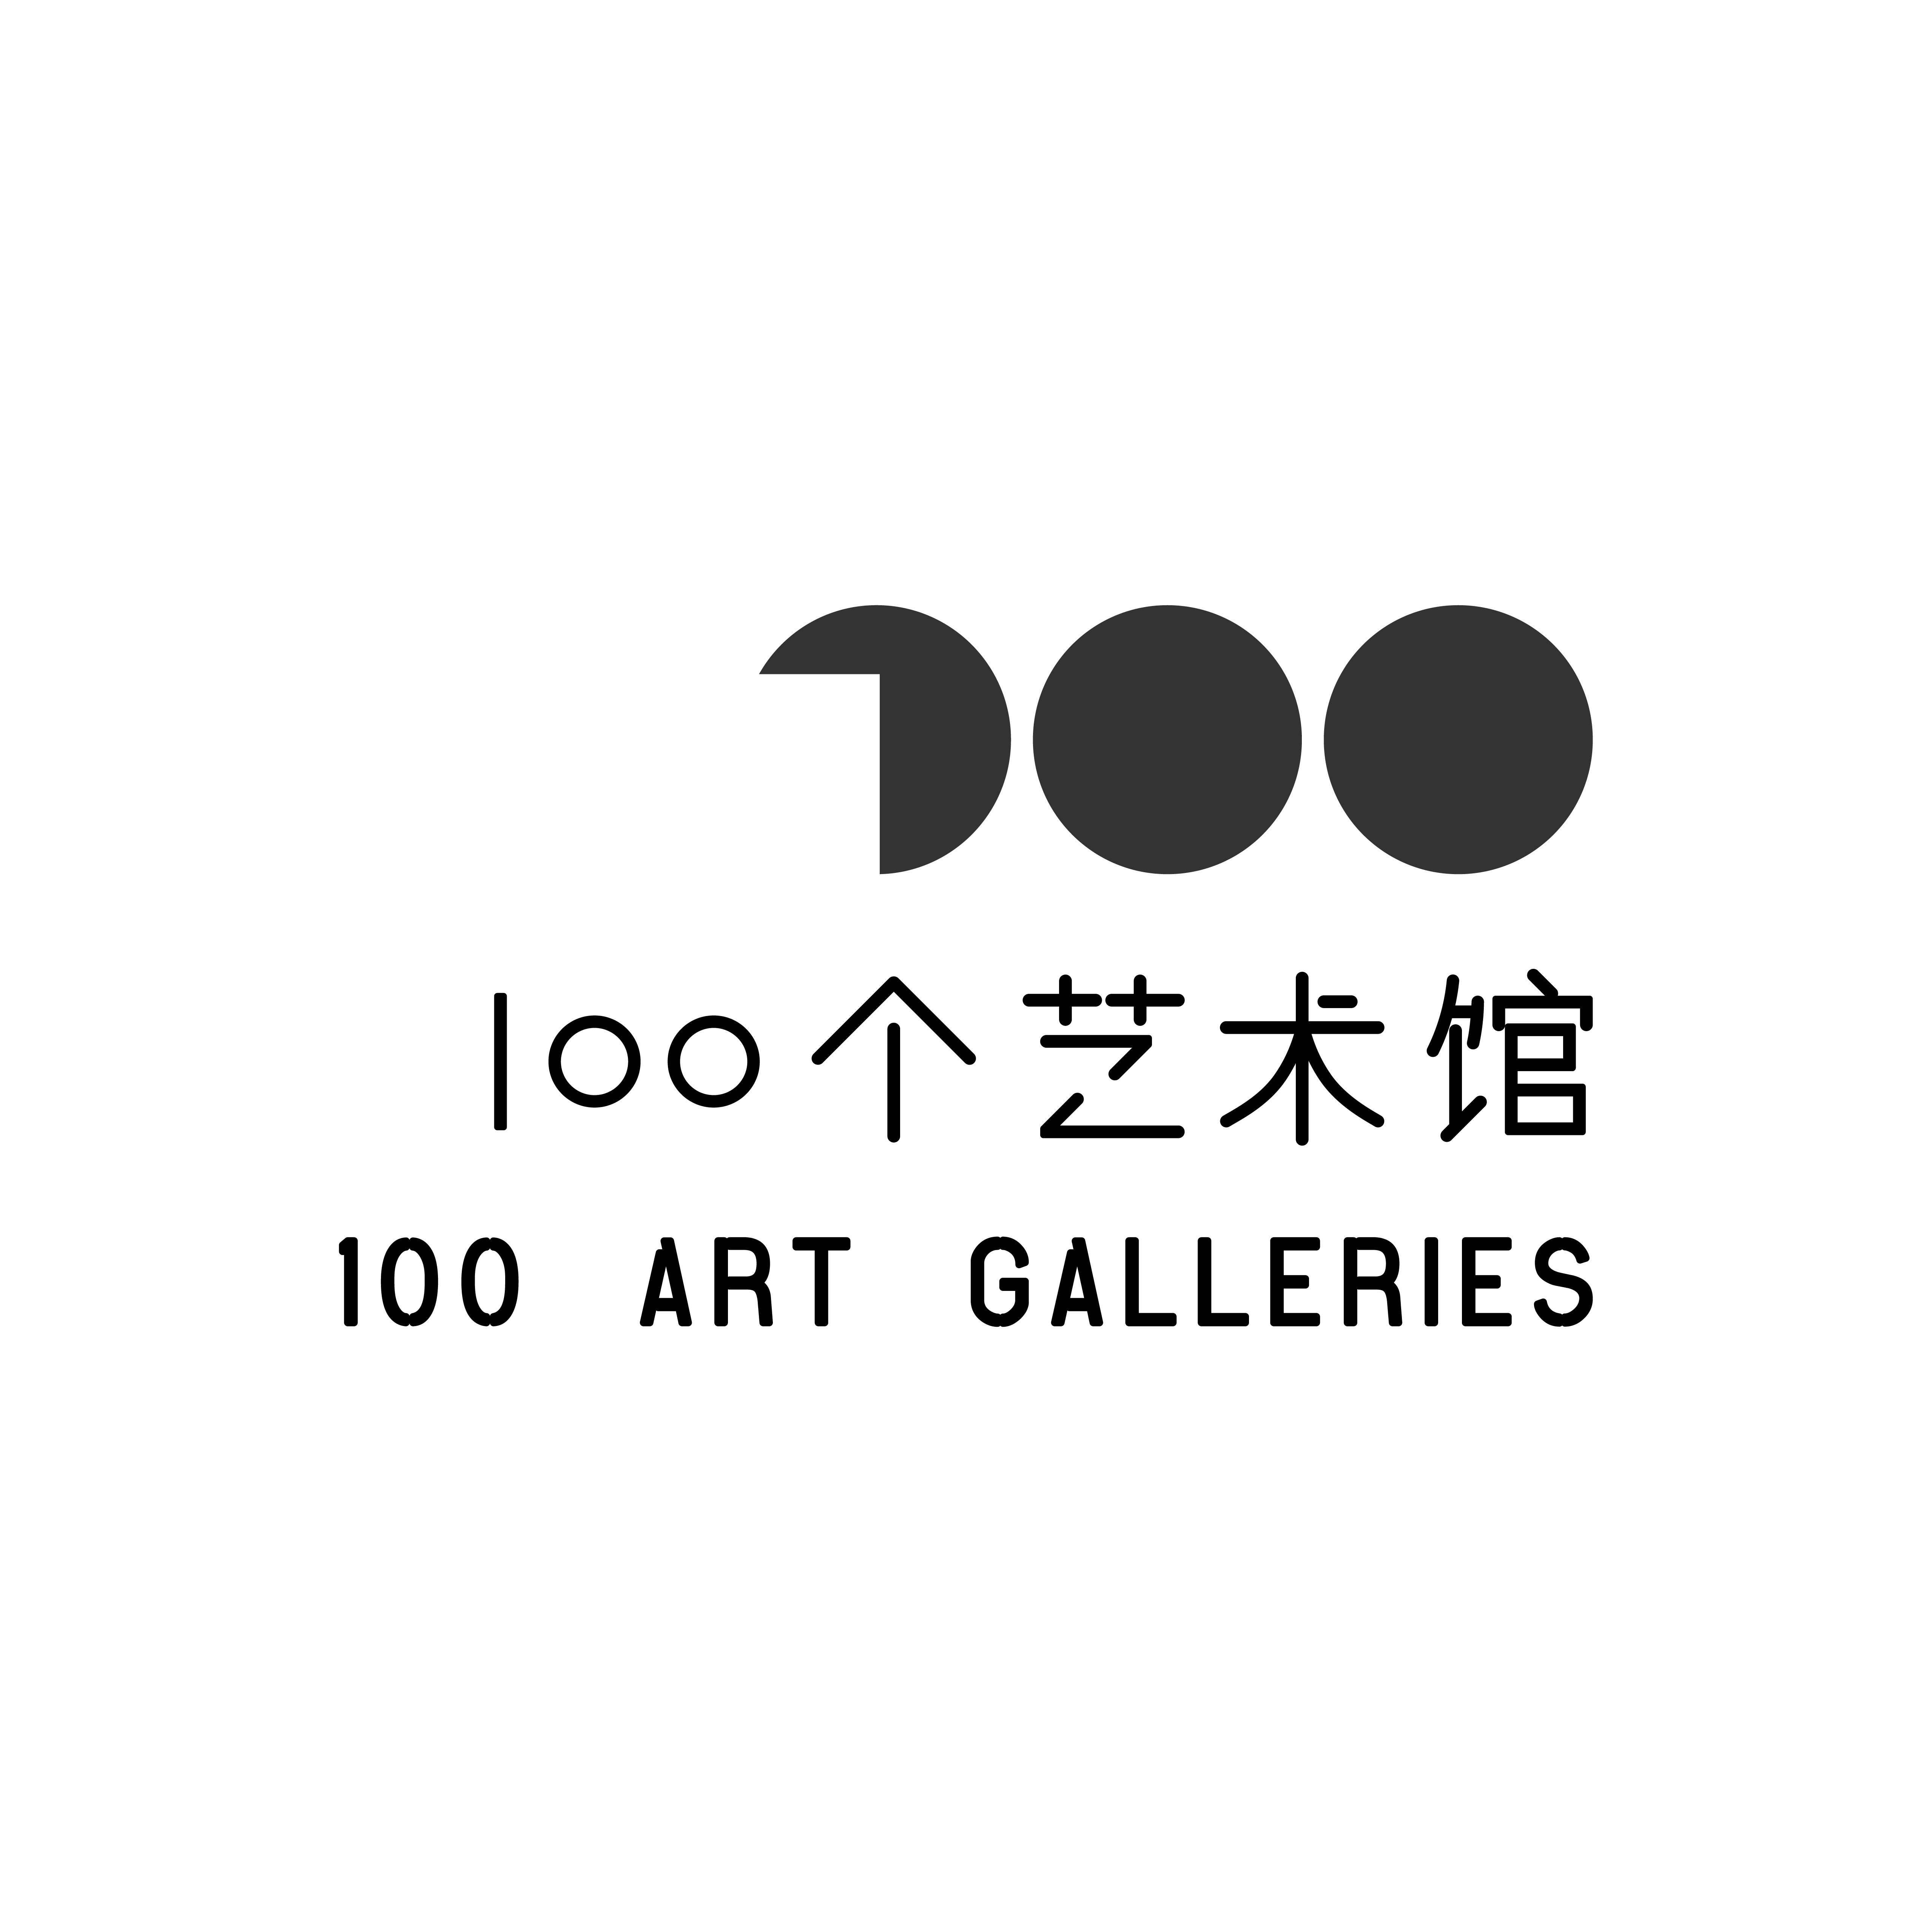 100个艺术馆